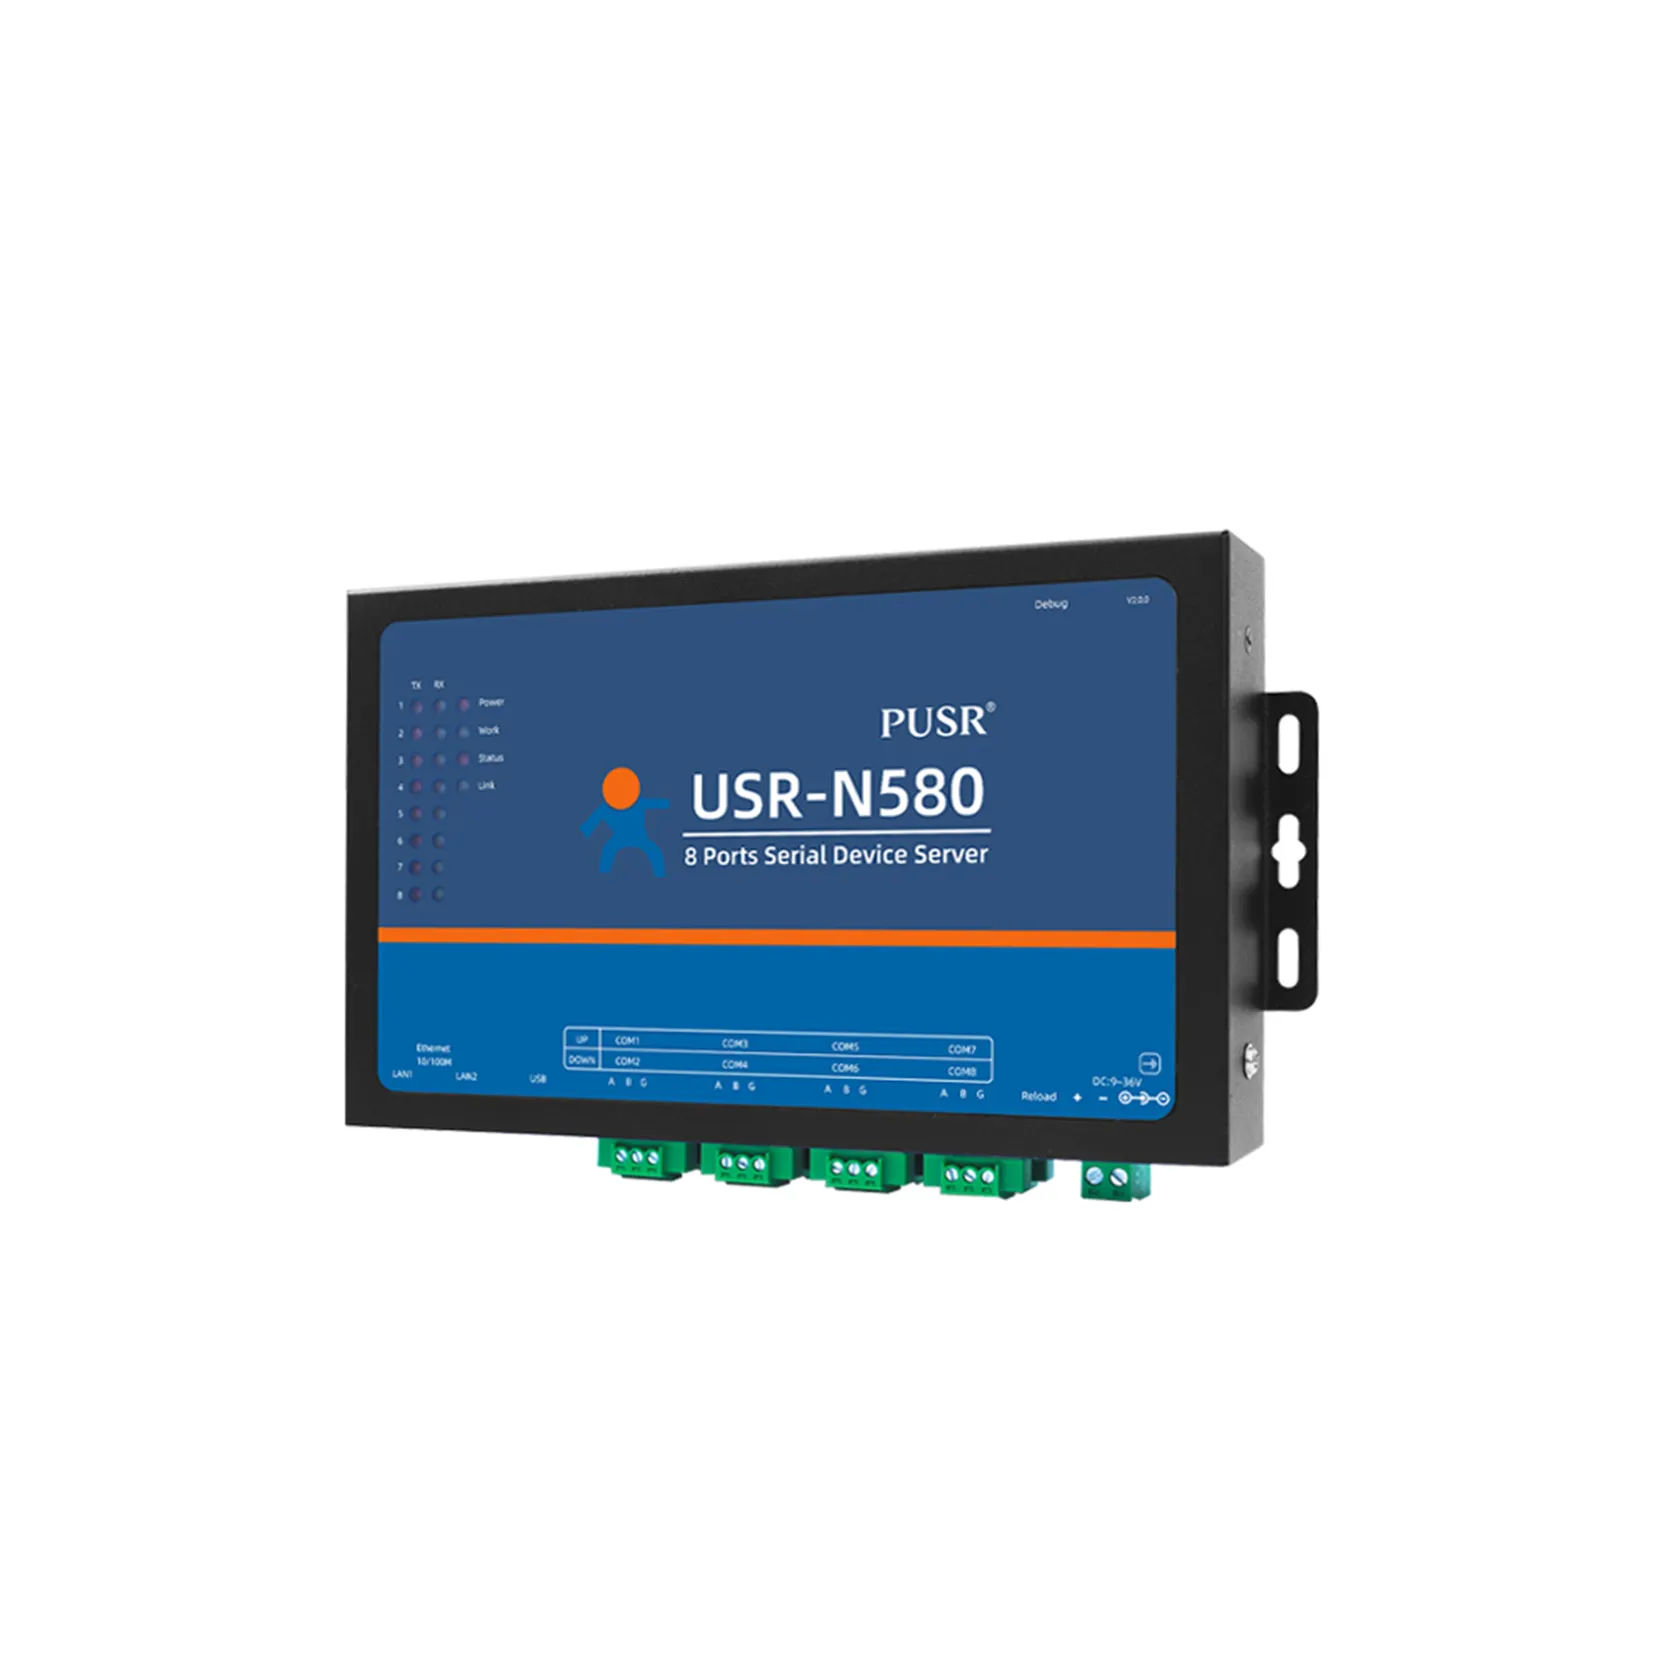 USR-N580 servidor de dispositivo série 8 portas rs485 serial para ethernet conversor suporte mqtt